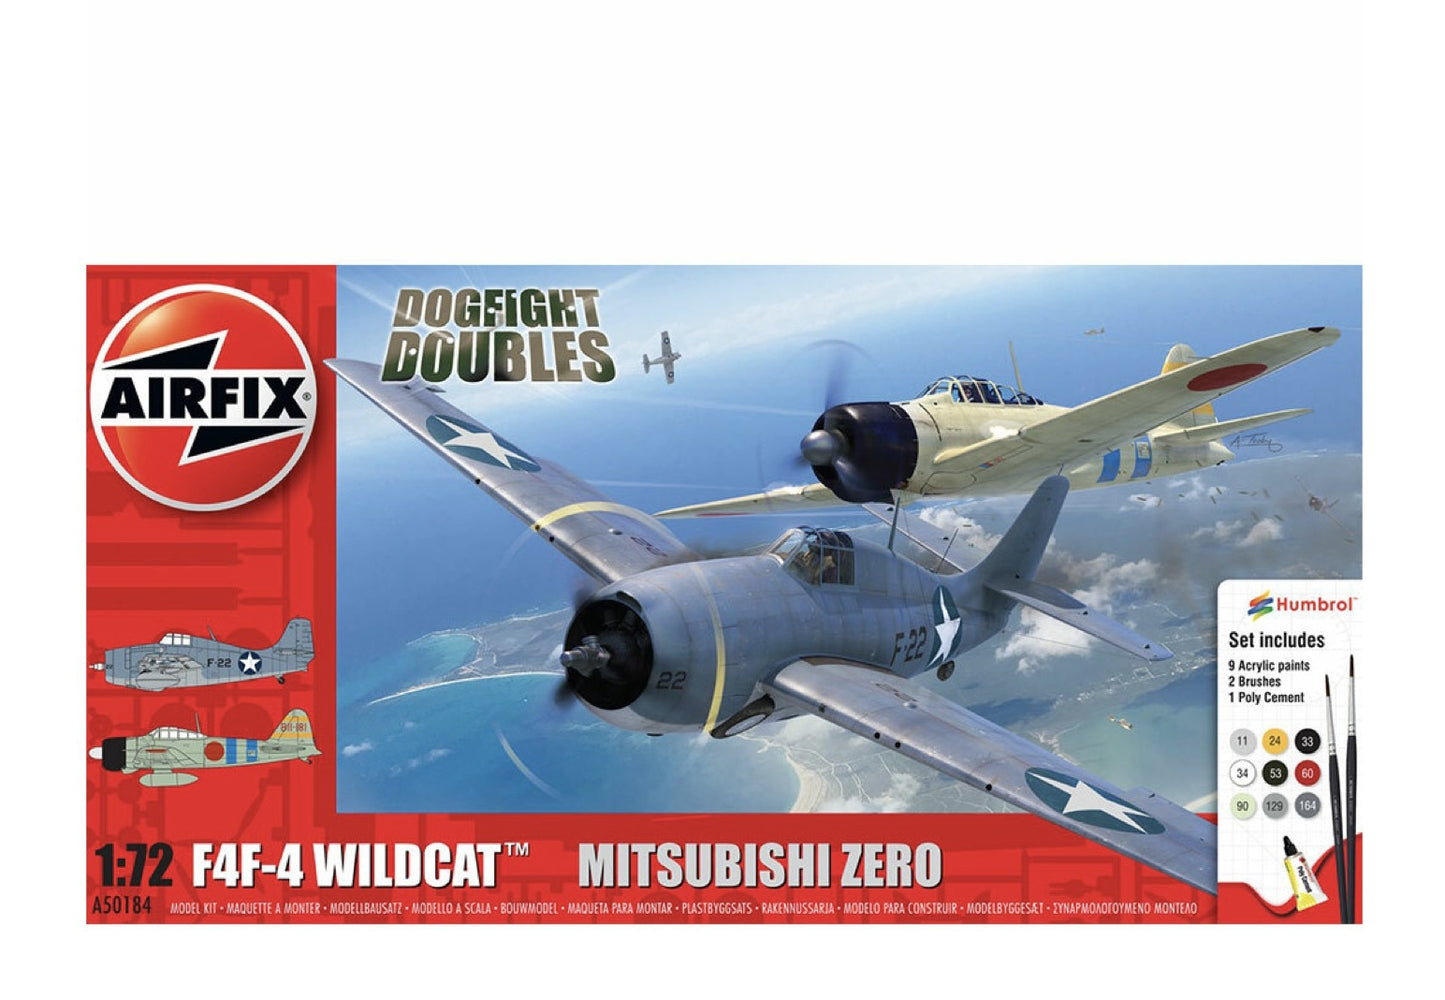 A50184 - Grumman F-4F4 Wildcat and Mitsubishi Zero